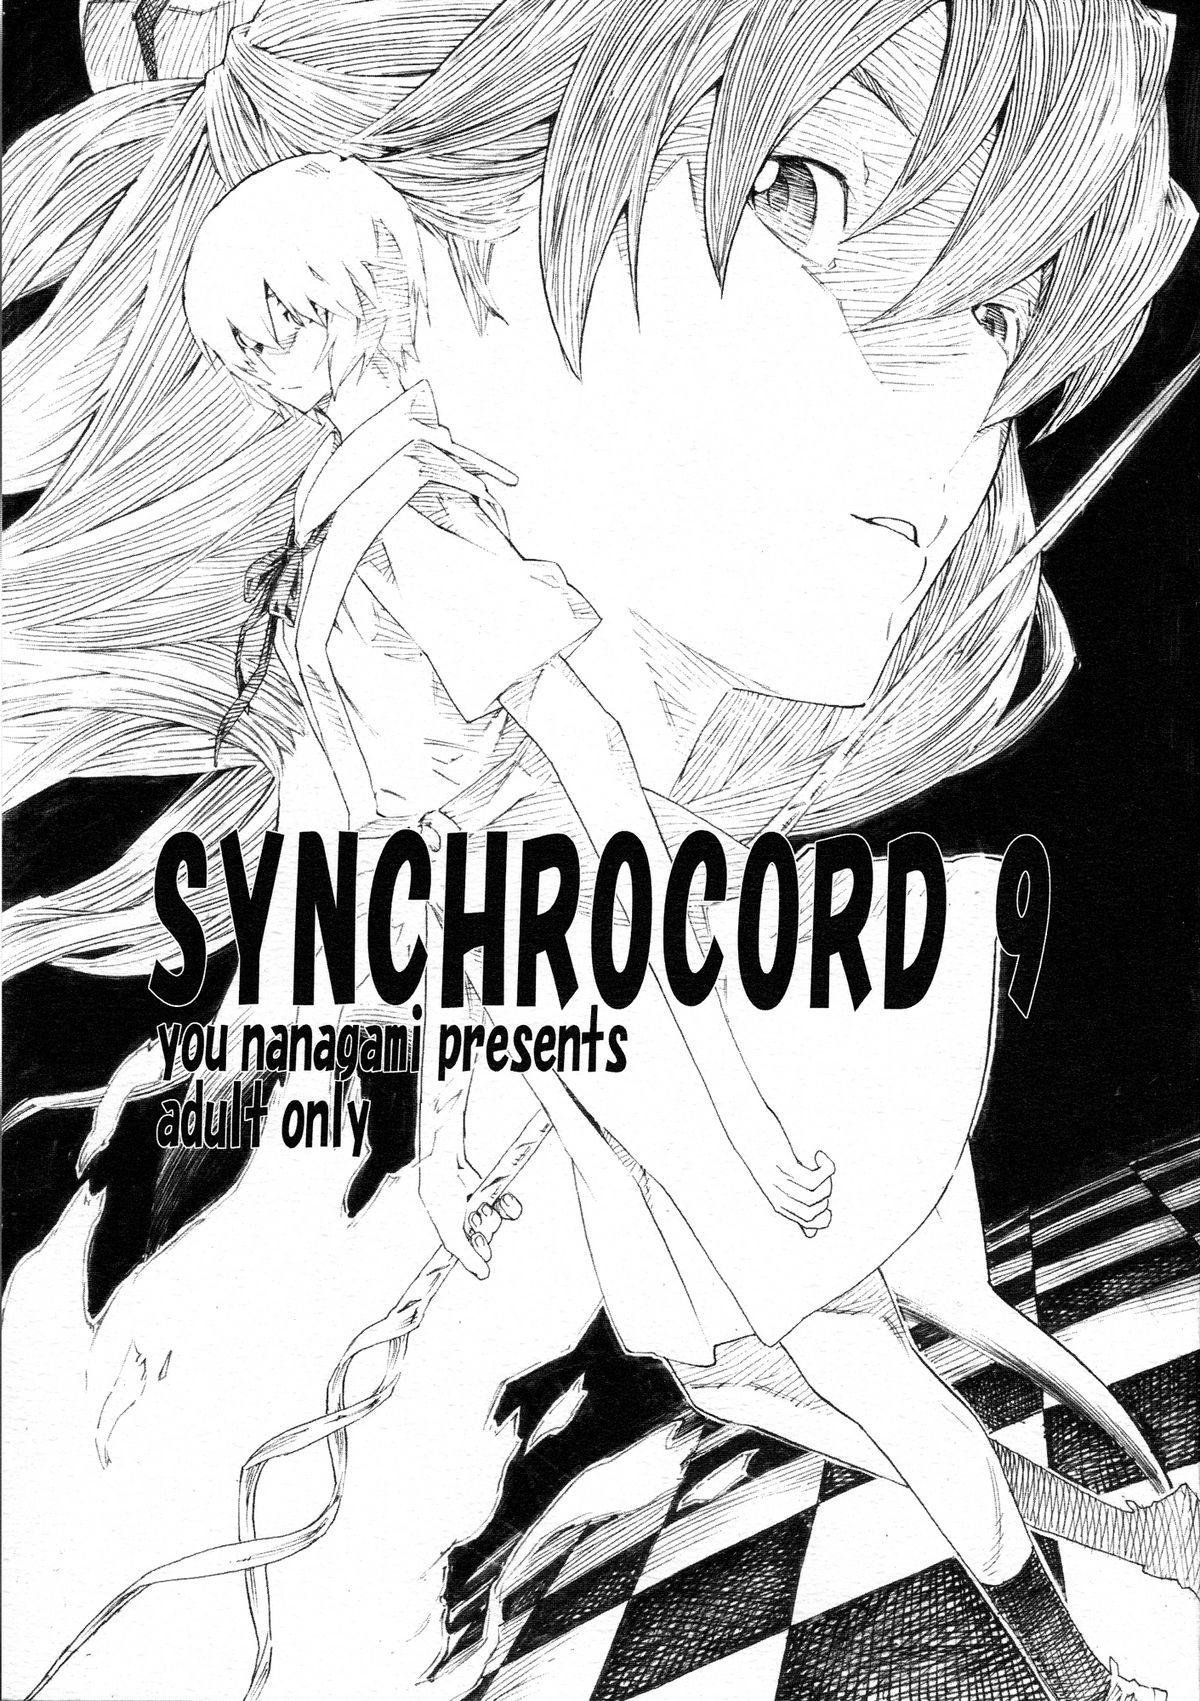 Exgirlfriend Synchrocord 9 - Neon genesis evangelion Girl - Picture 1